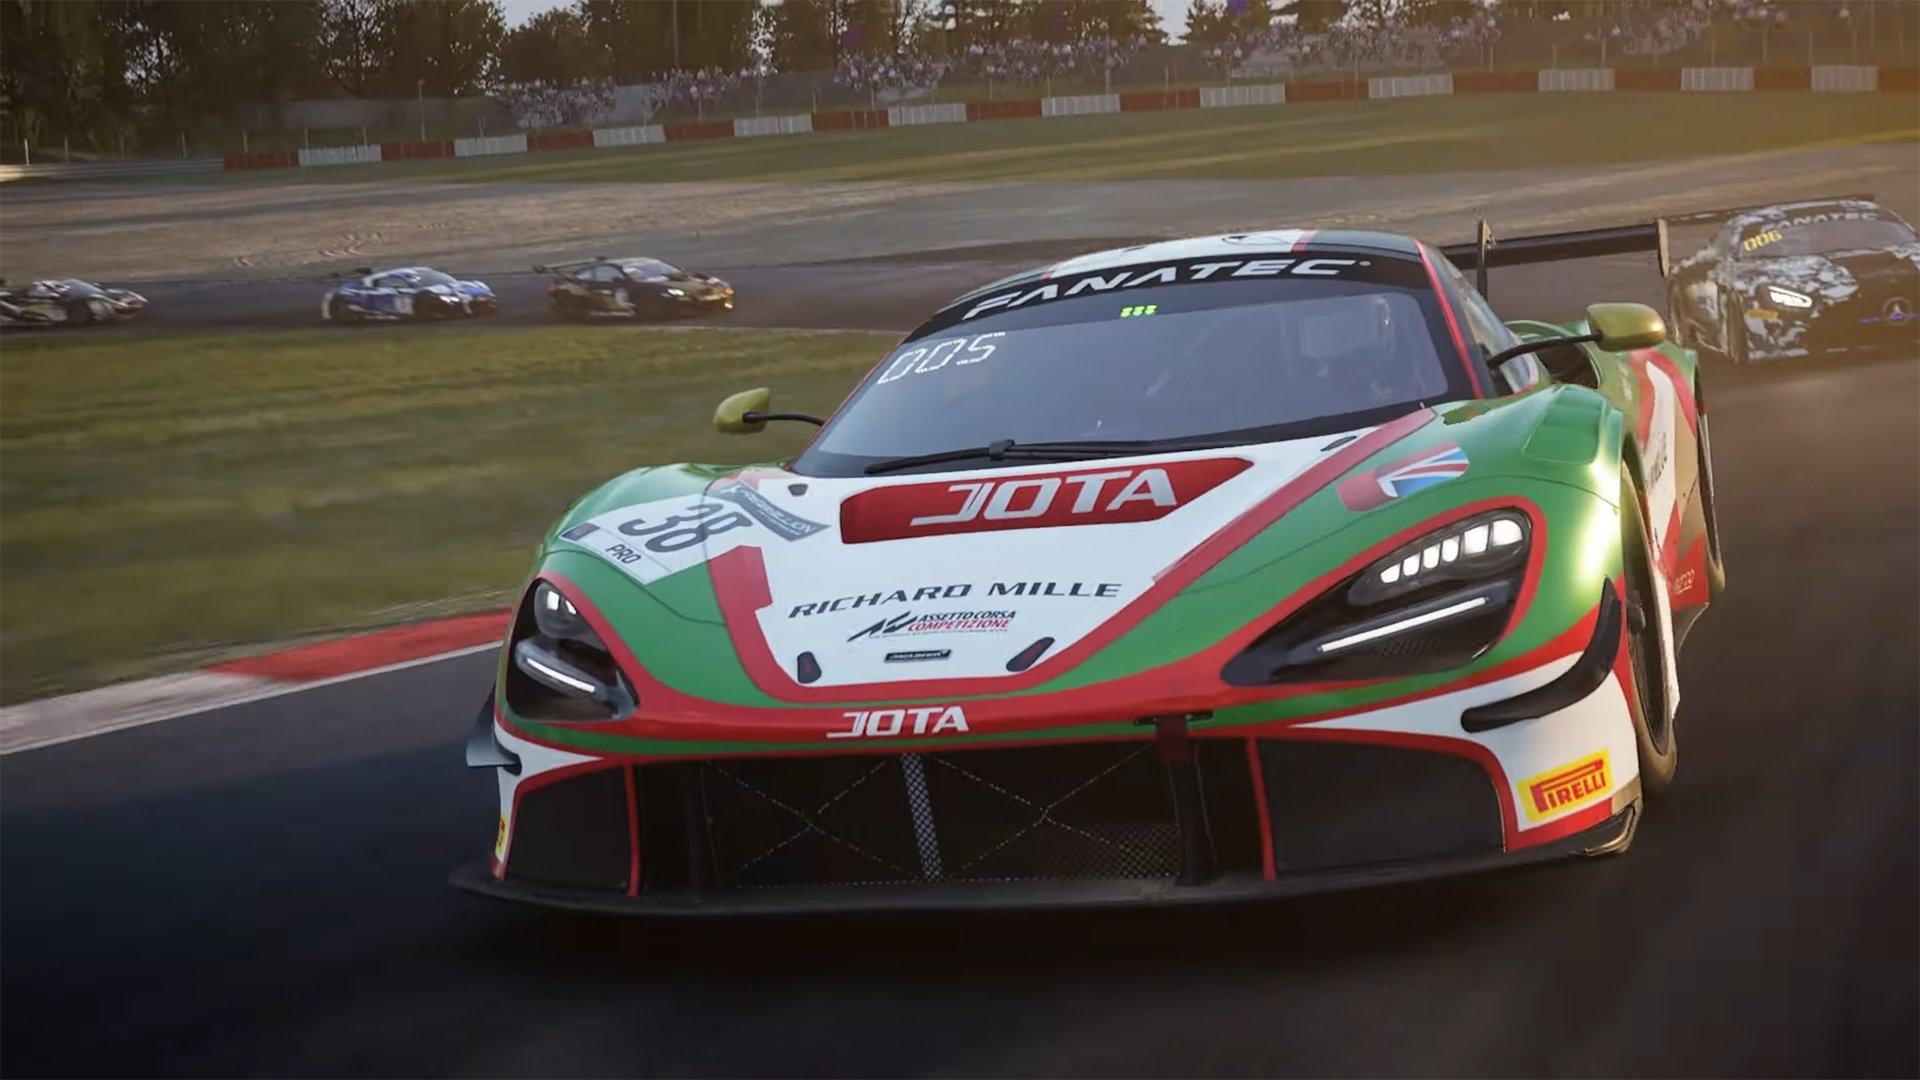 Exclusive Assetto Corsa Competizione Trailer Reveals New-Gen